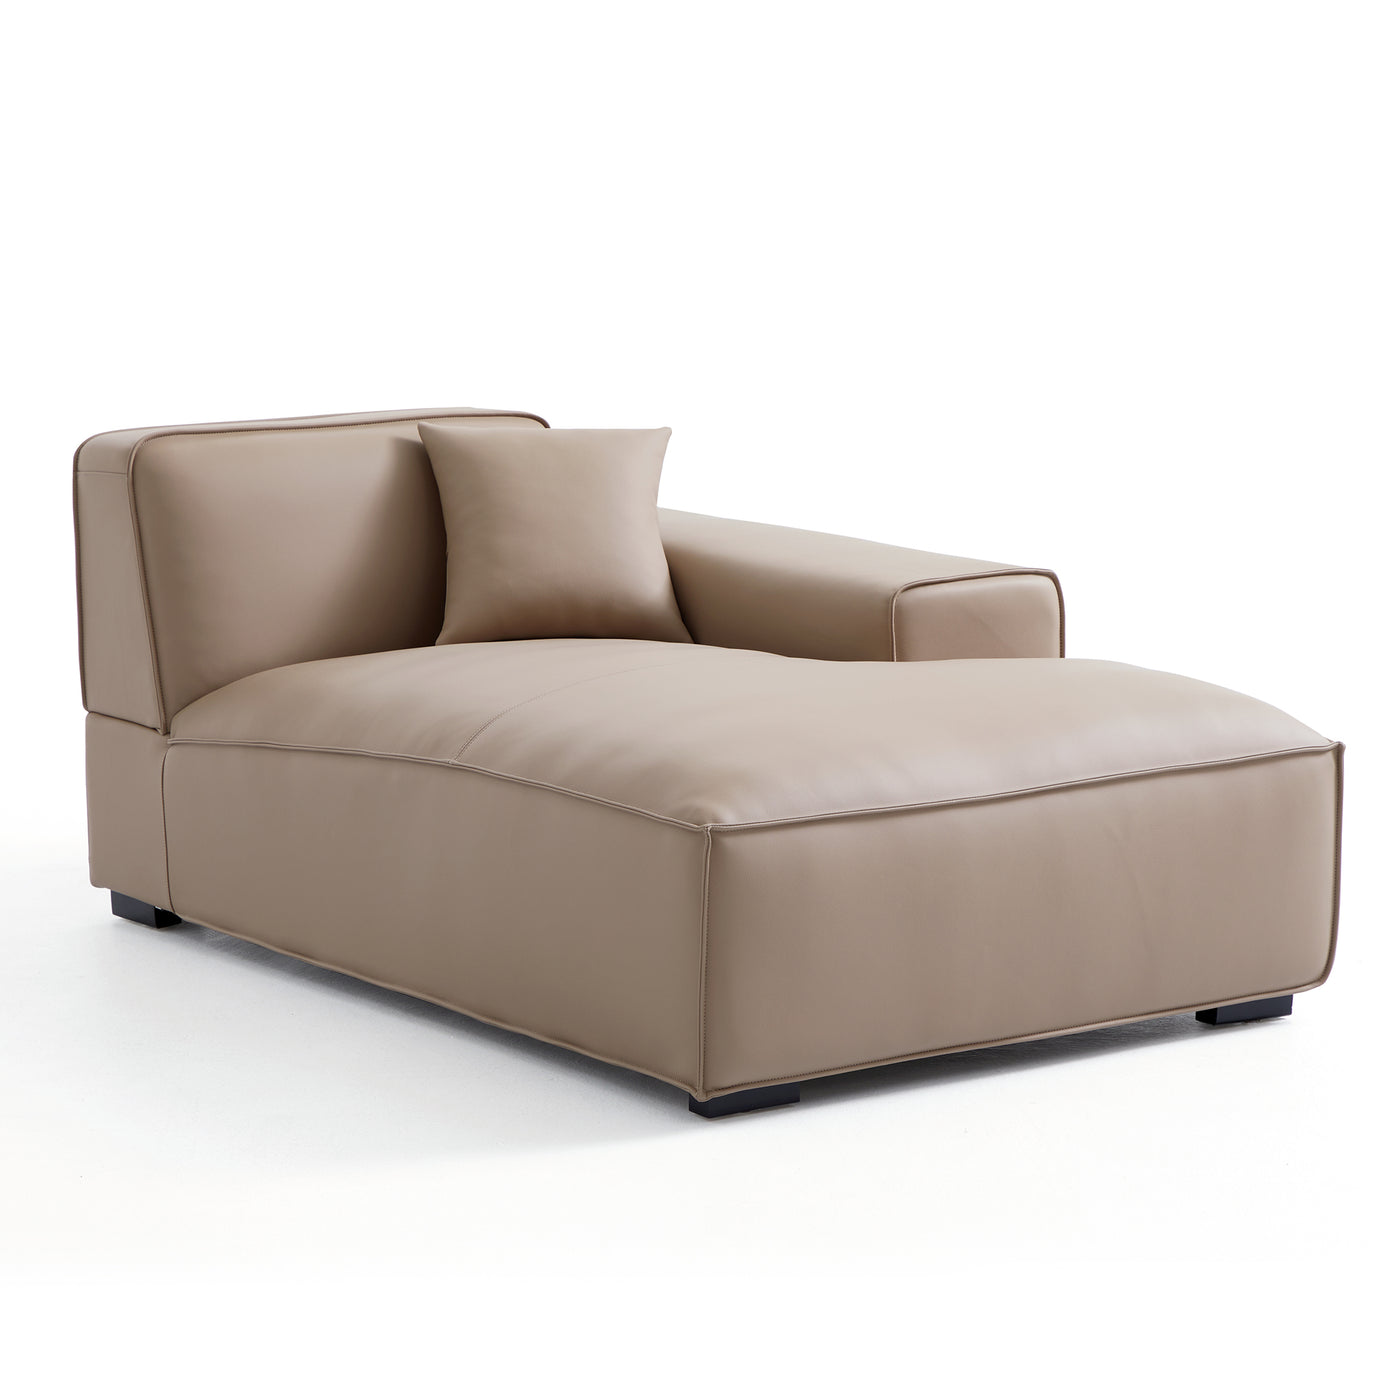 Domus Modular Khaki Leather Sectional Sofa-Khaki